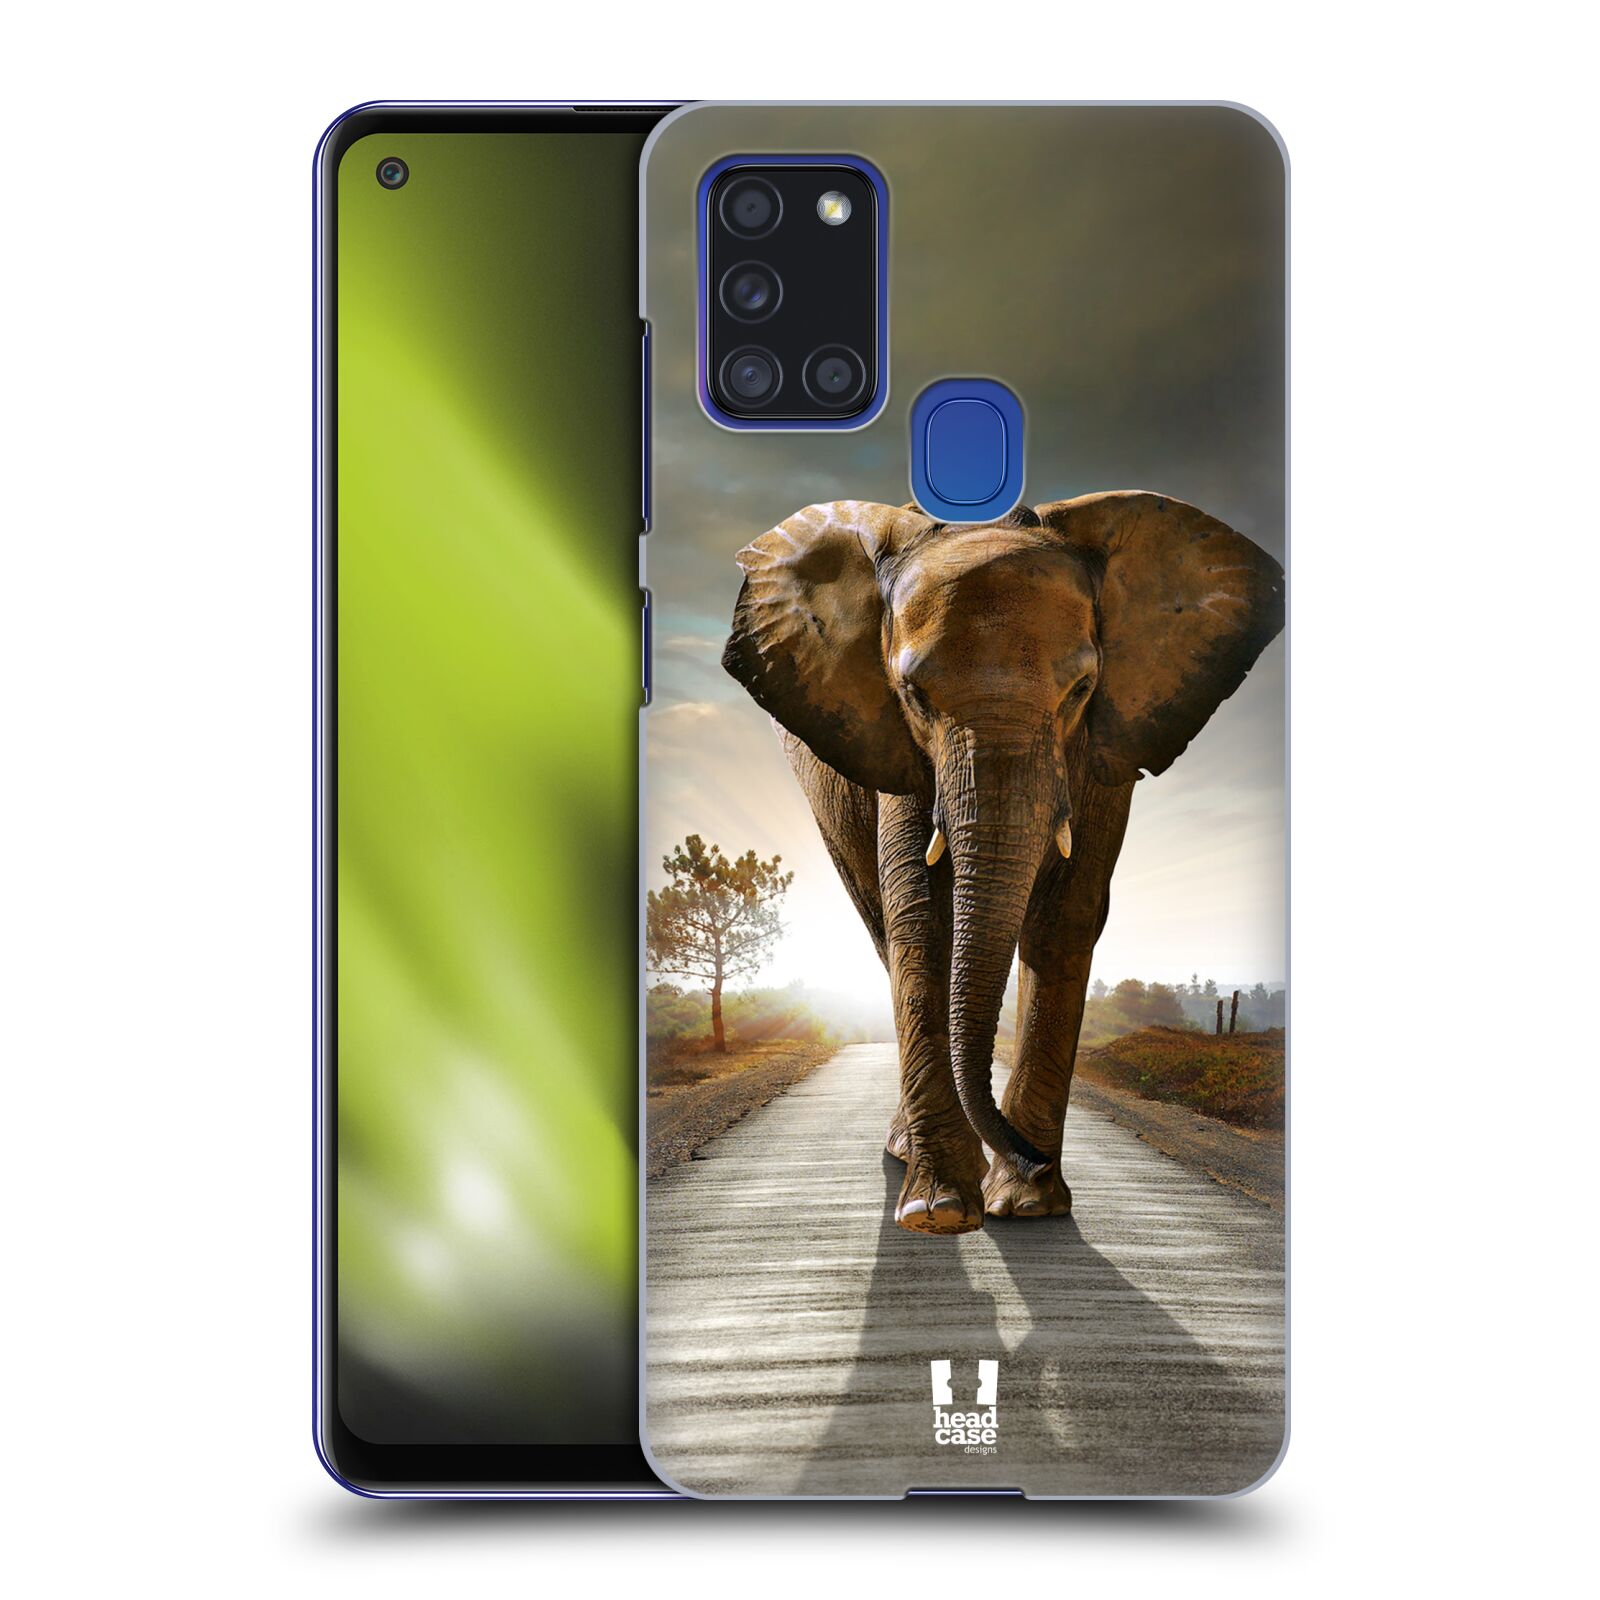 Zadní obal pro mobil Samsung Galaxy A21s - HEAD CASE - Svět zvířat kráčející slon